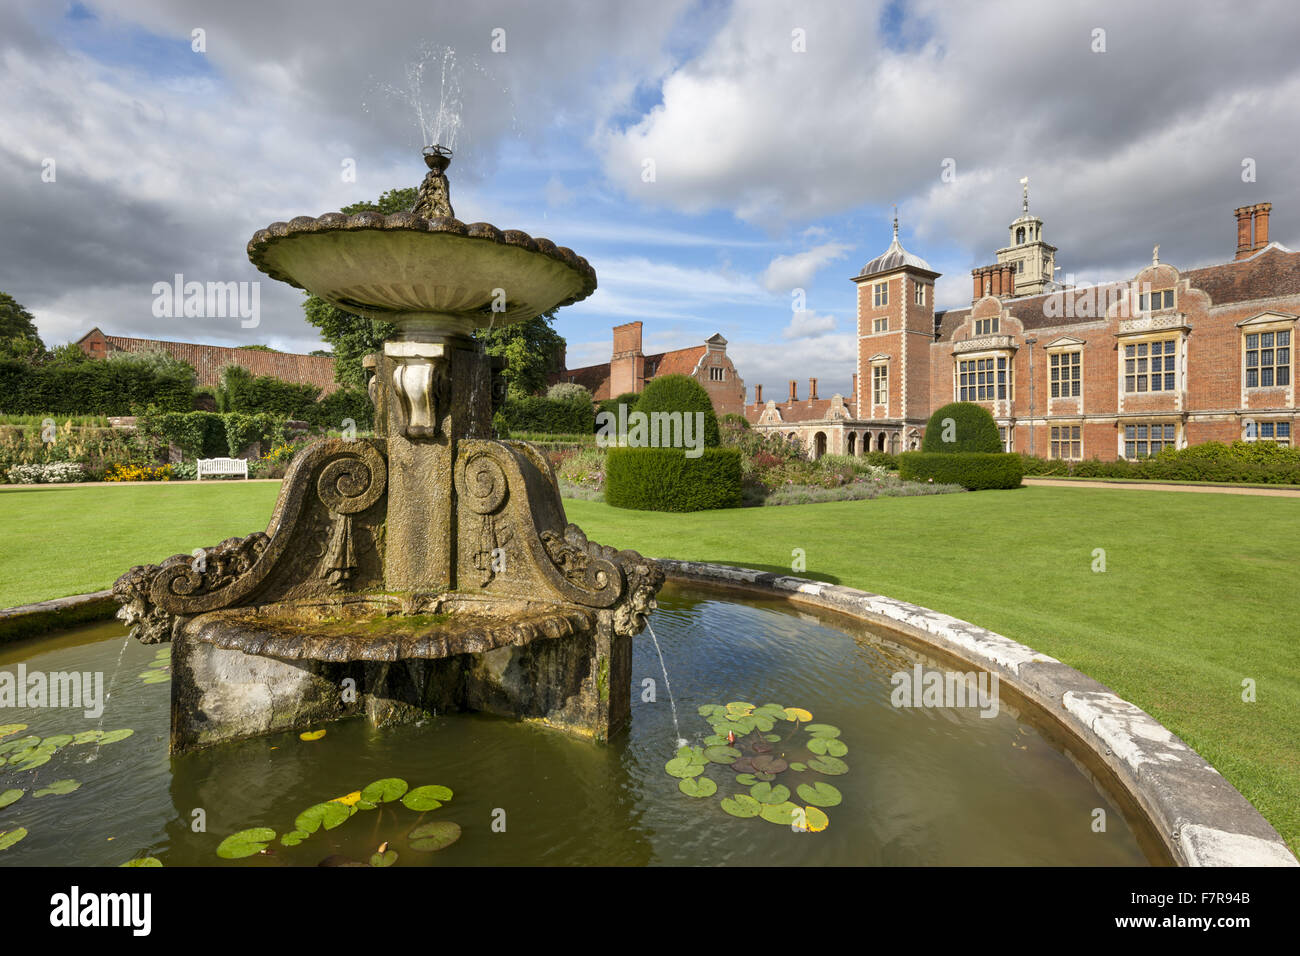 Der Brunnen auf dem Anwesen Blickling, Norfolk. Blickling ist ein Turm aus rotem Backstein jakobinischen Herrenhaus, sitzen in wunderschönen Gärten und Parks. Stockfoto